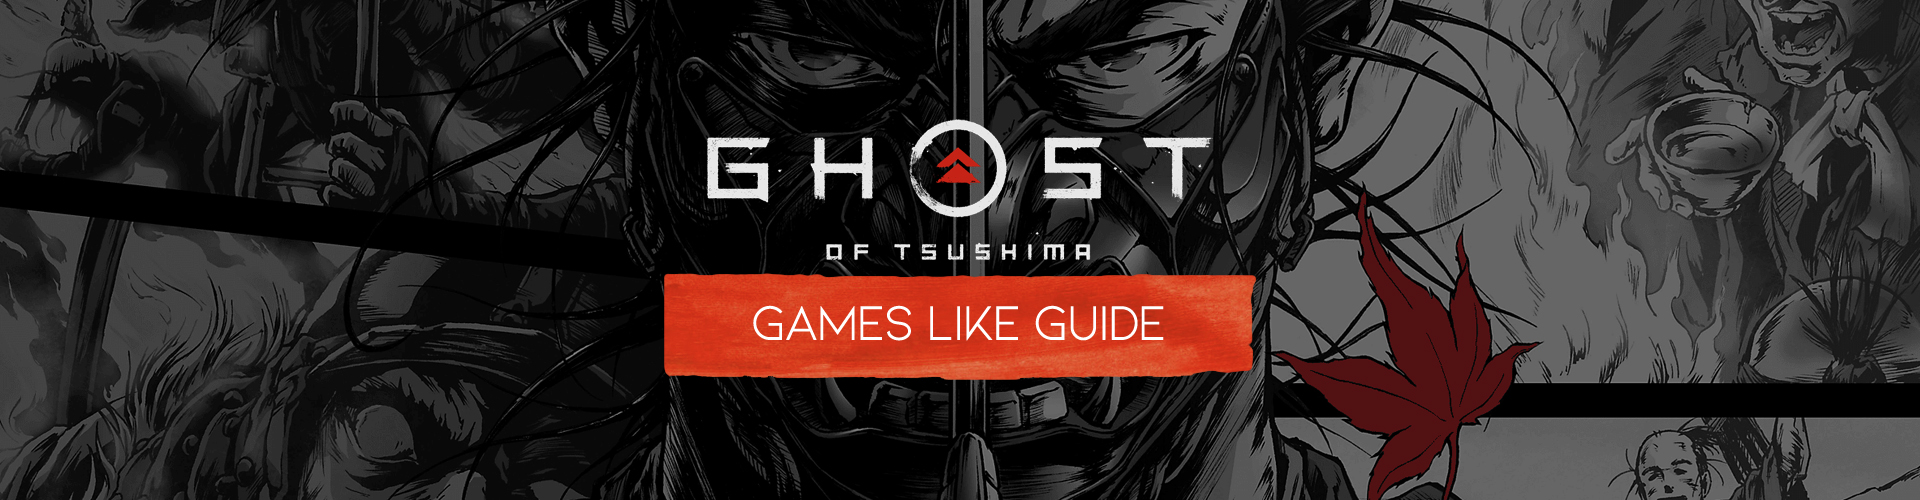 Juegos como Ghost of Tsushima